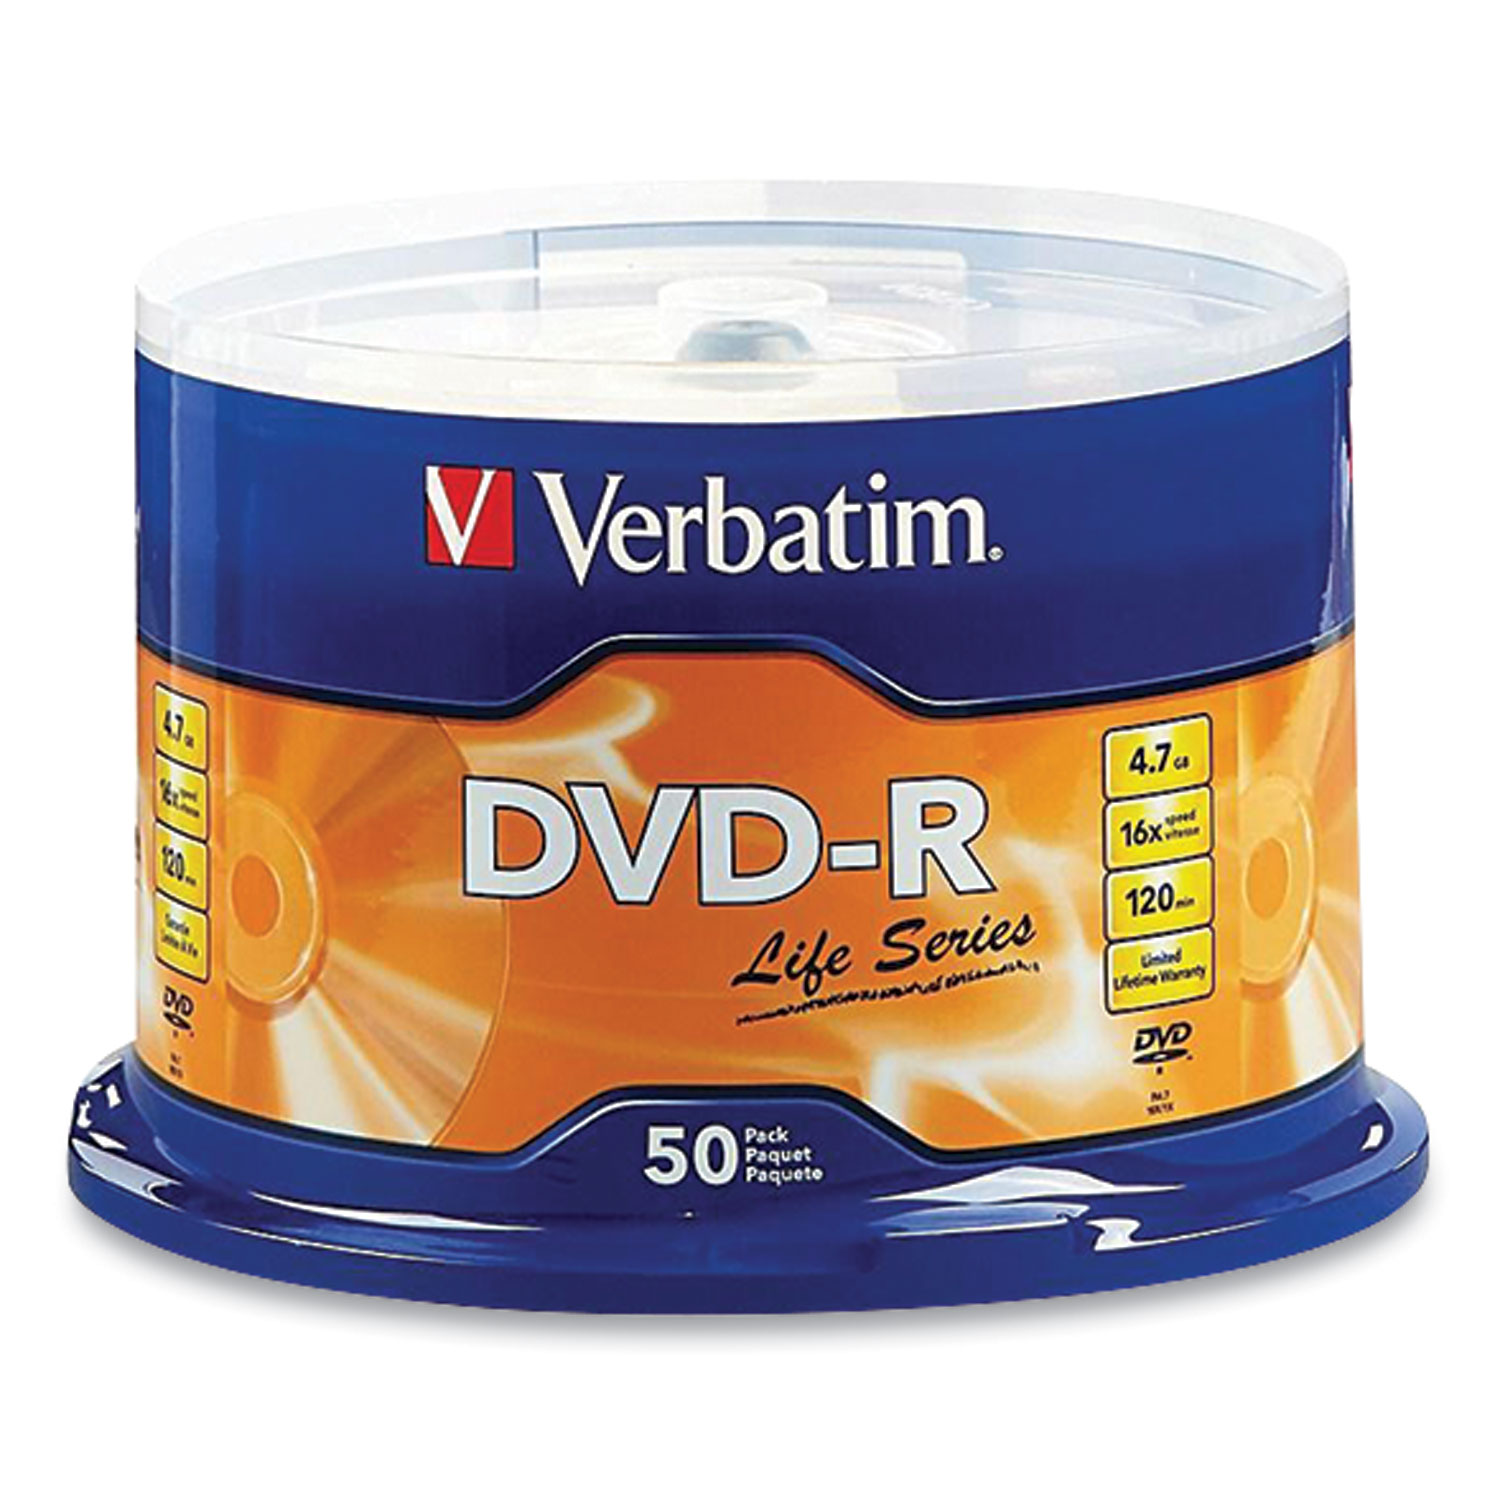 Verbatim® DVD-R LifeSeries Branded Disc, 4.7 GB, 16x, Spindle, Silver, 50/Pack